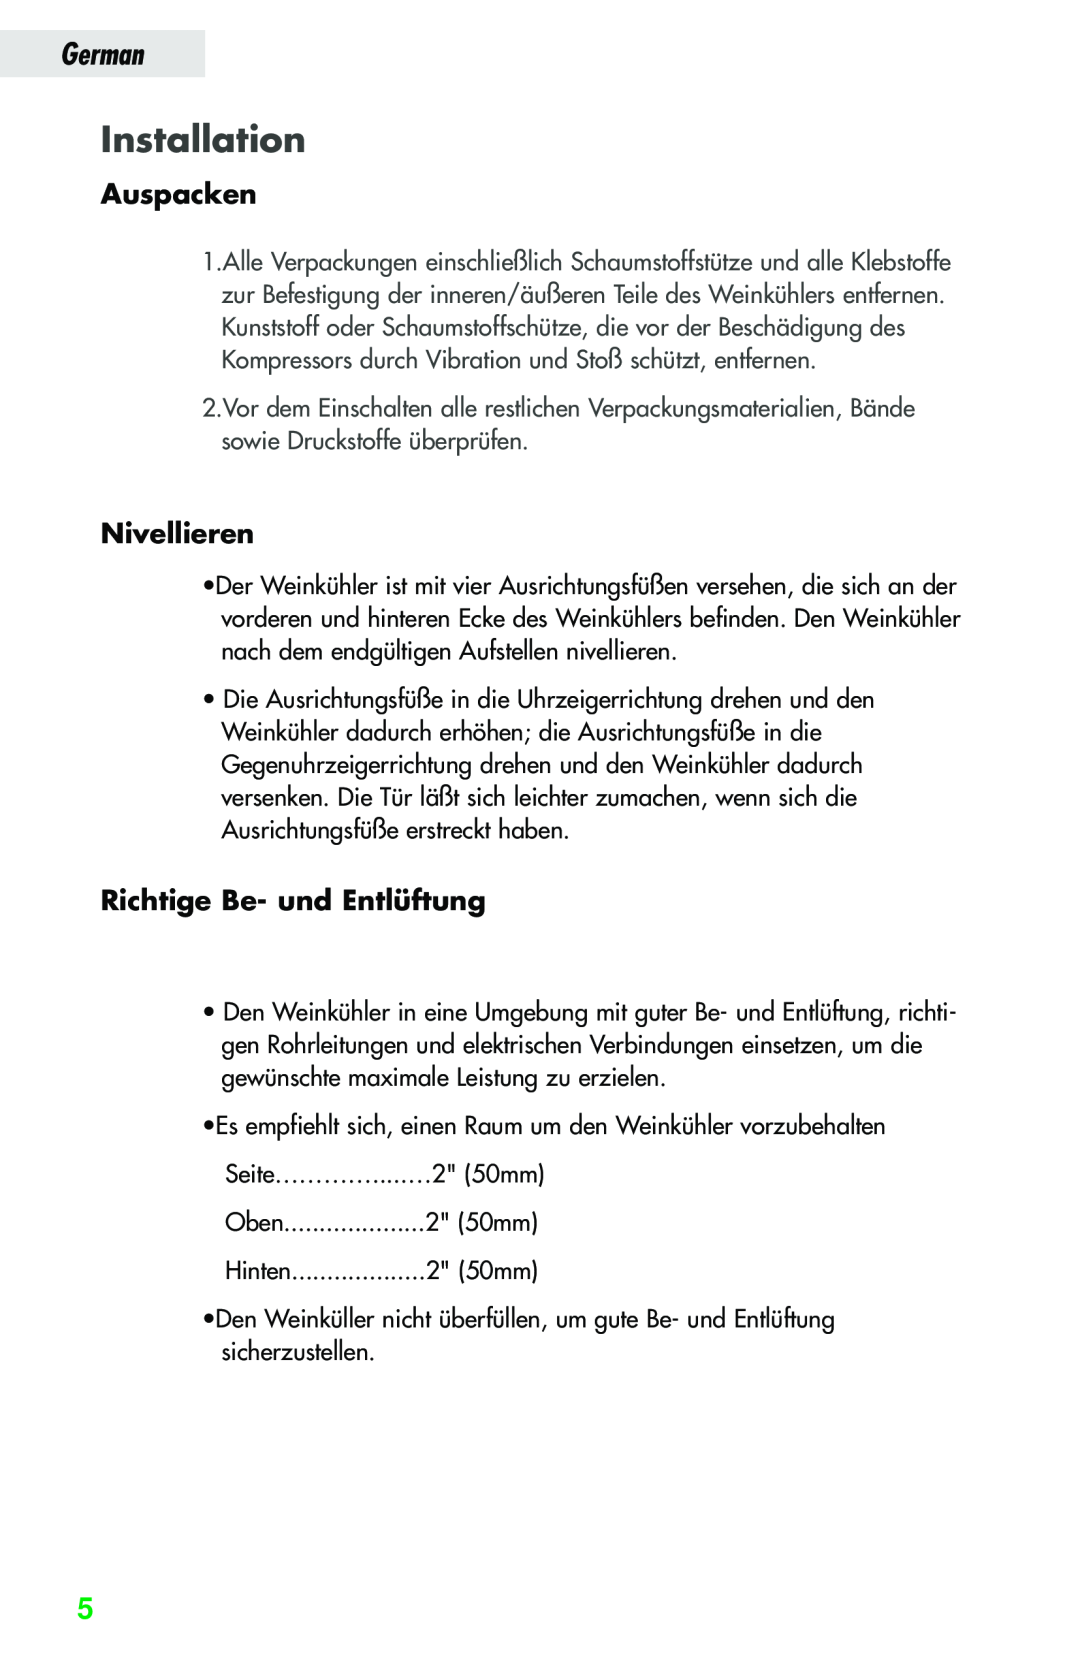 Haier JC-82GB manual Installation, Auspacken, Nivellieren, Richtige Be- und Entlüftung, German 